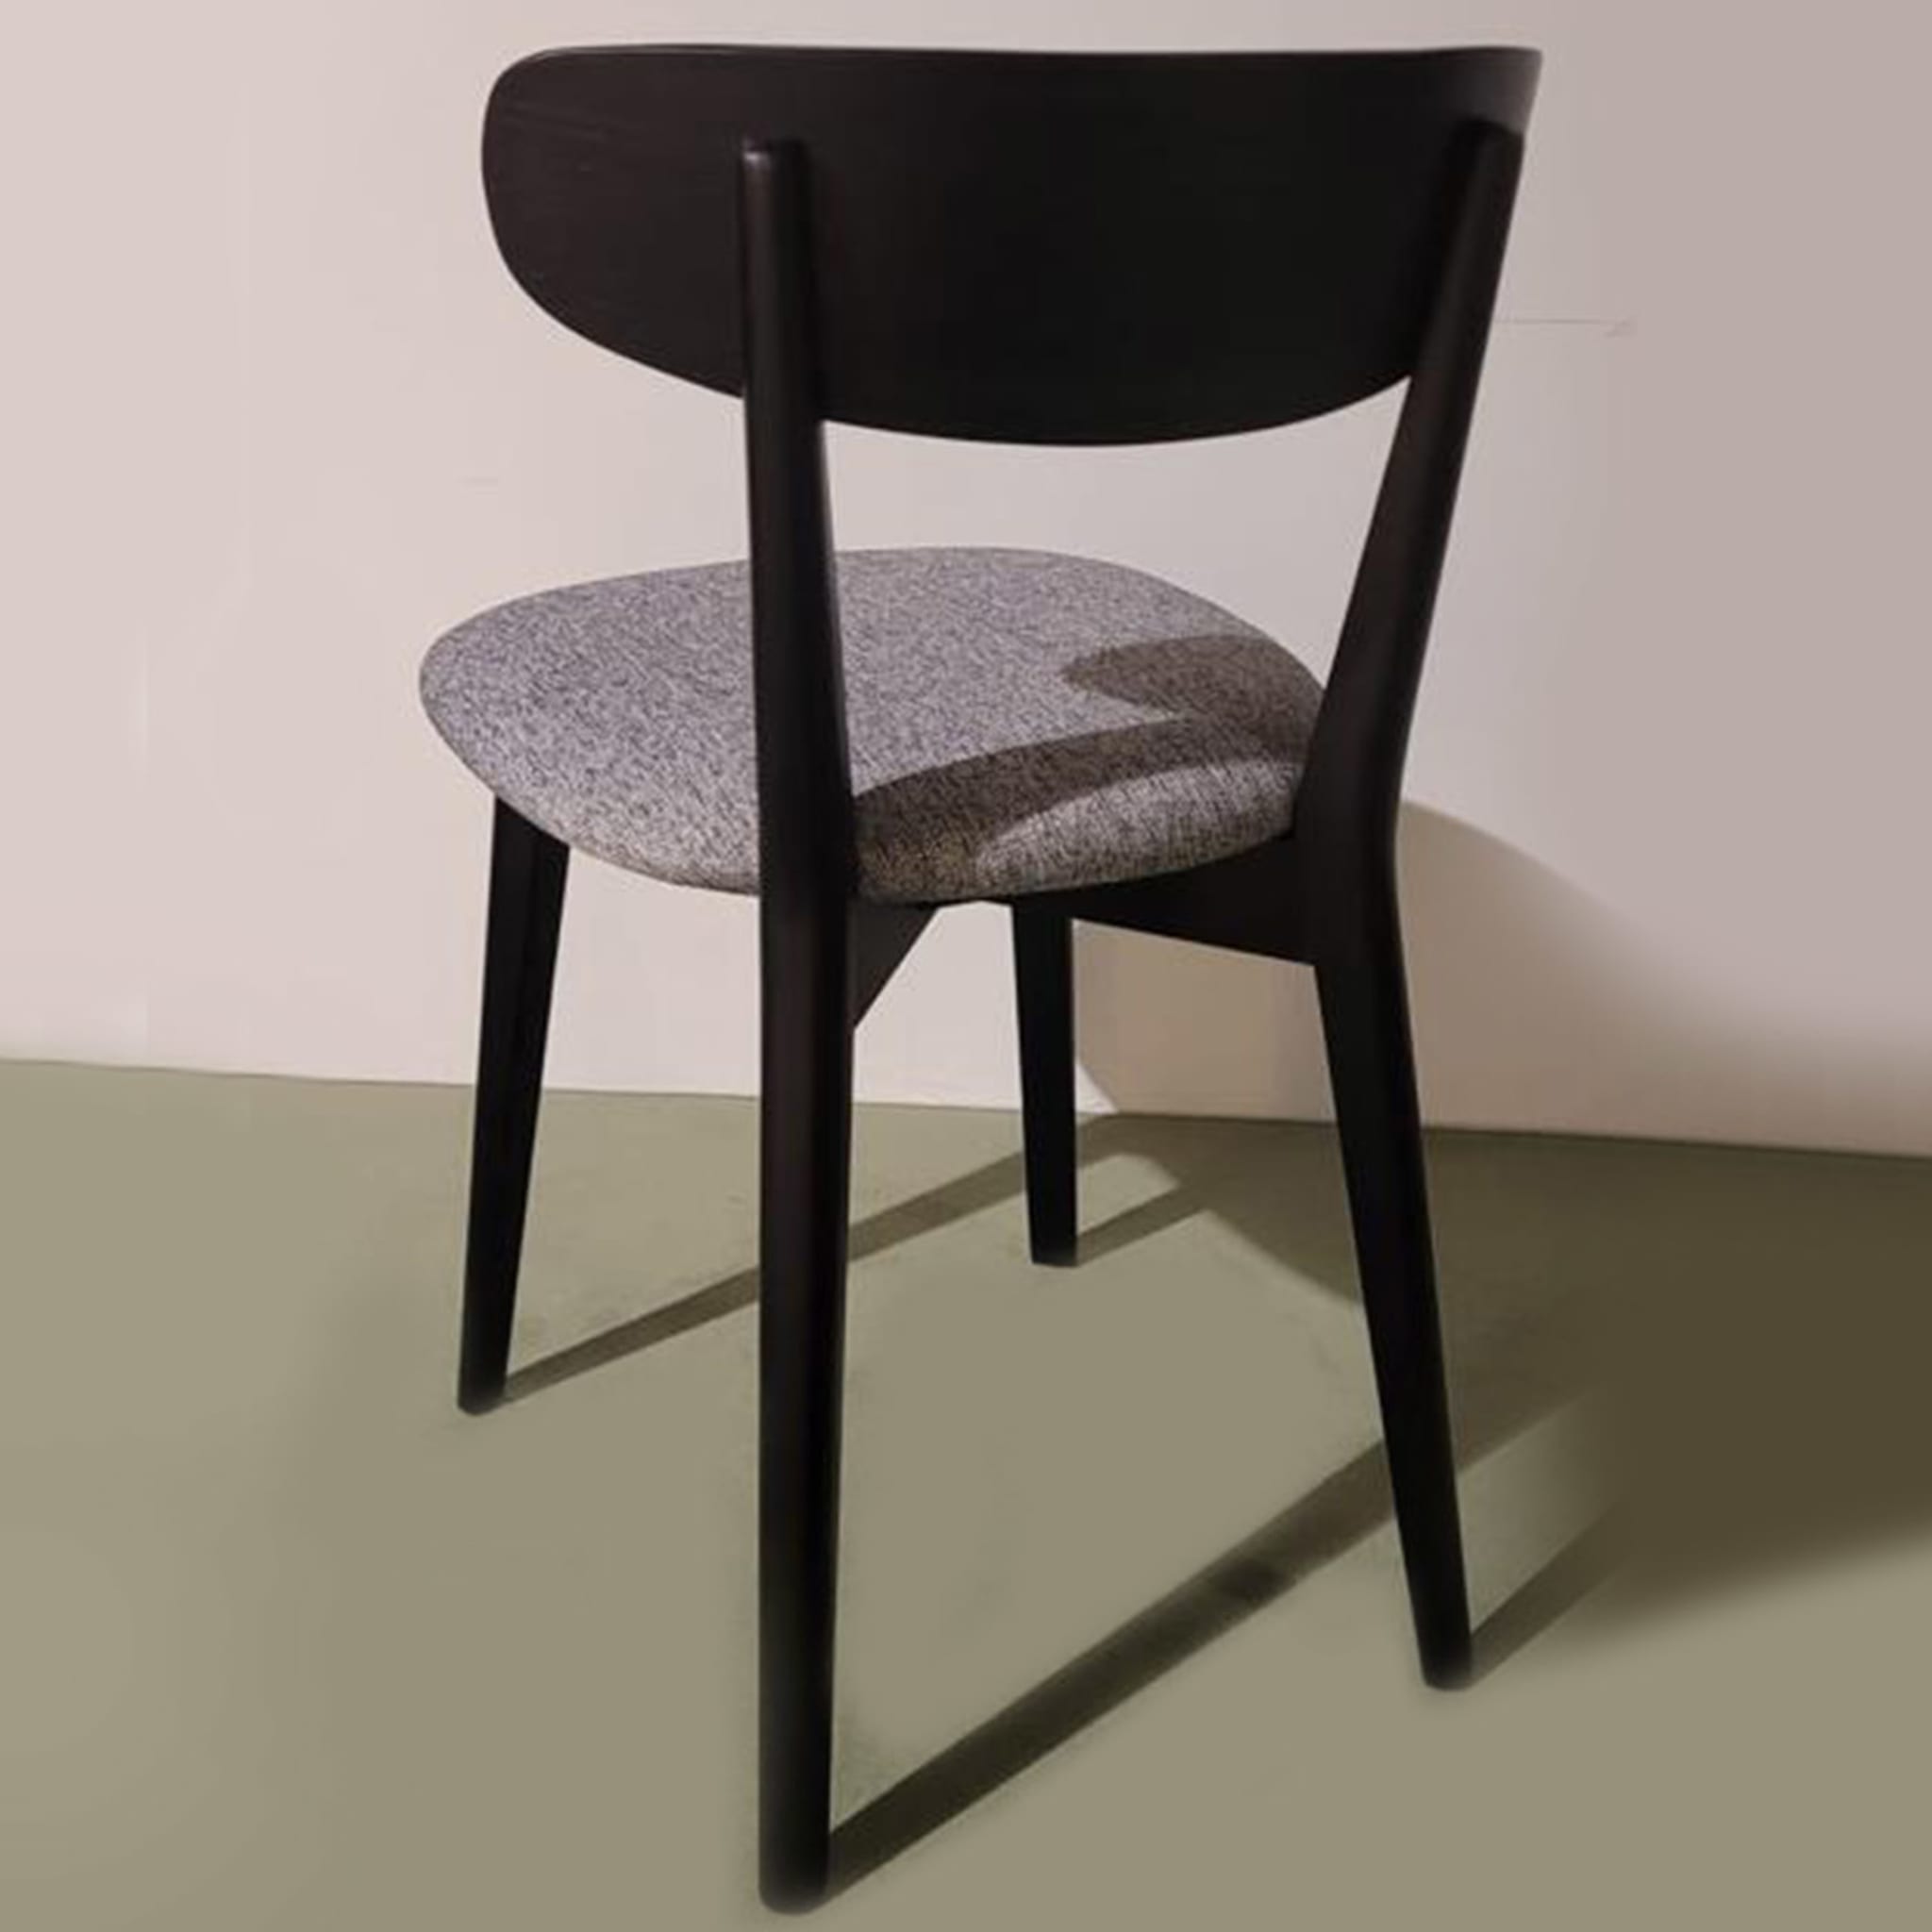 Chioggia Chair - Alternative view 1